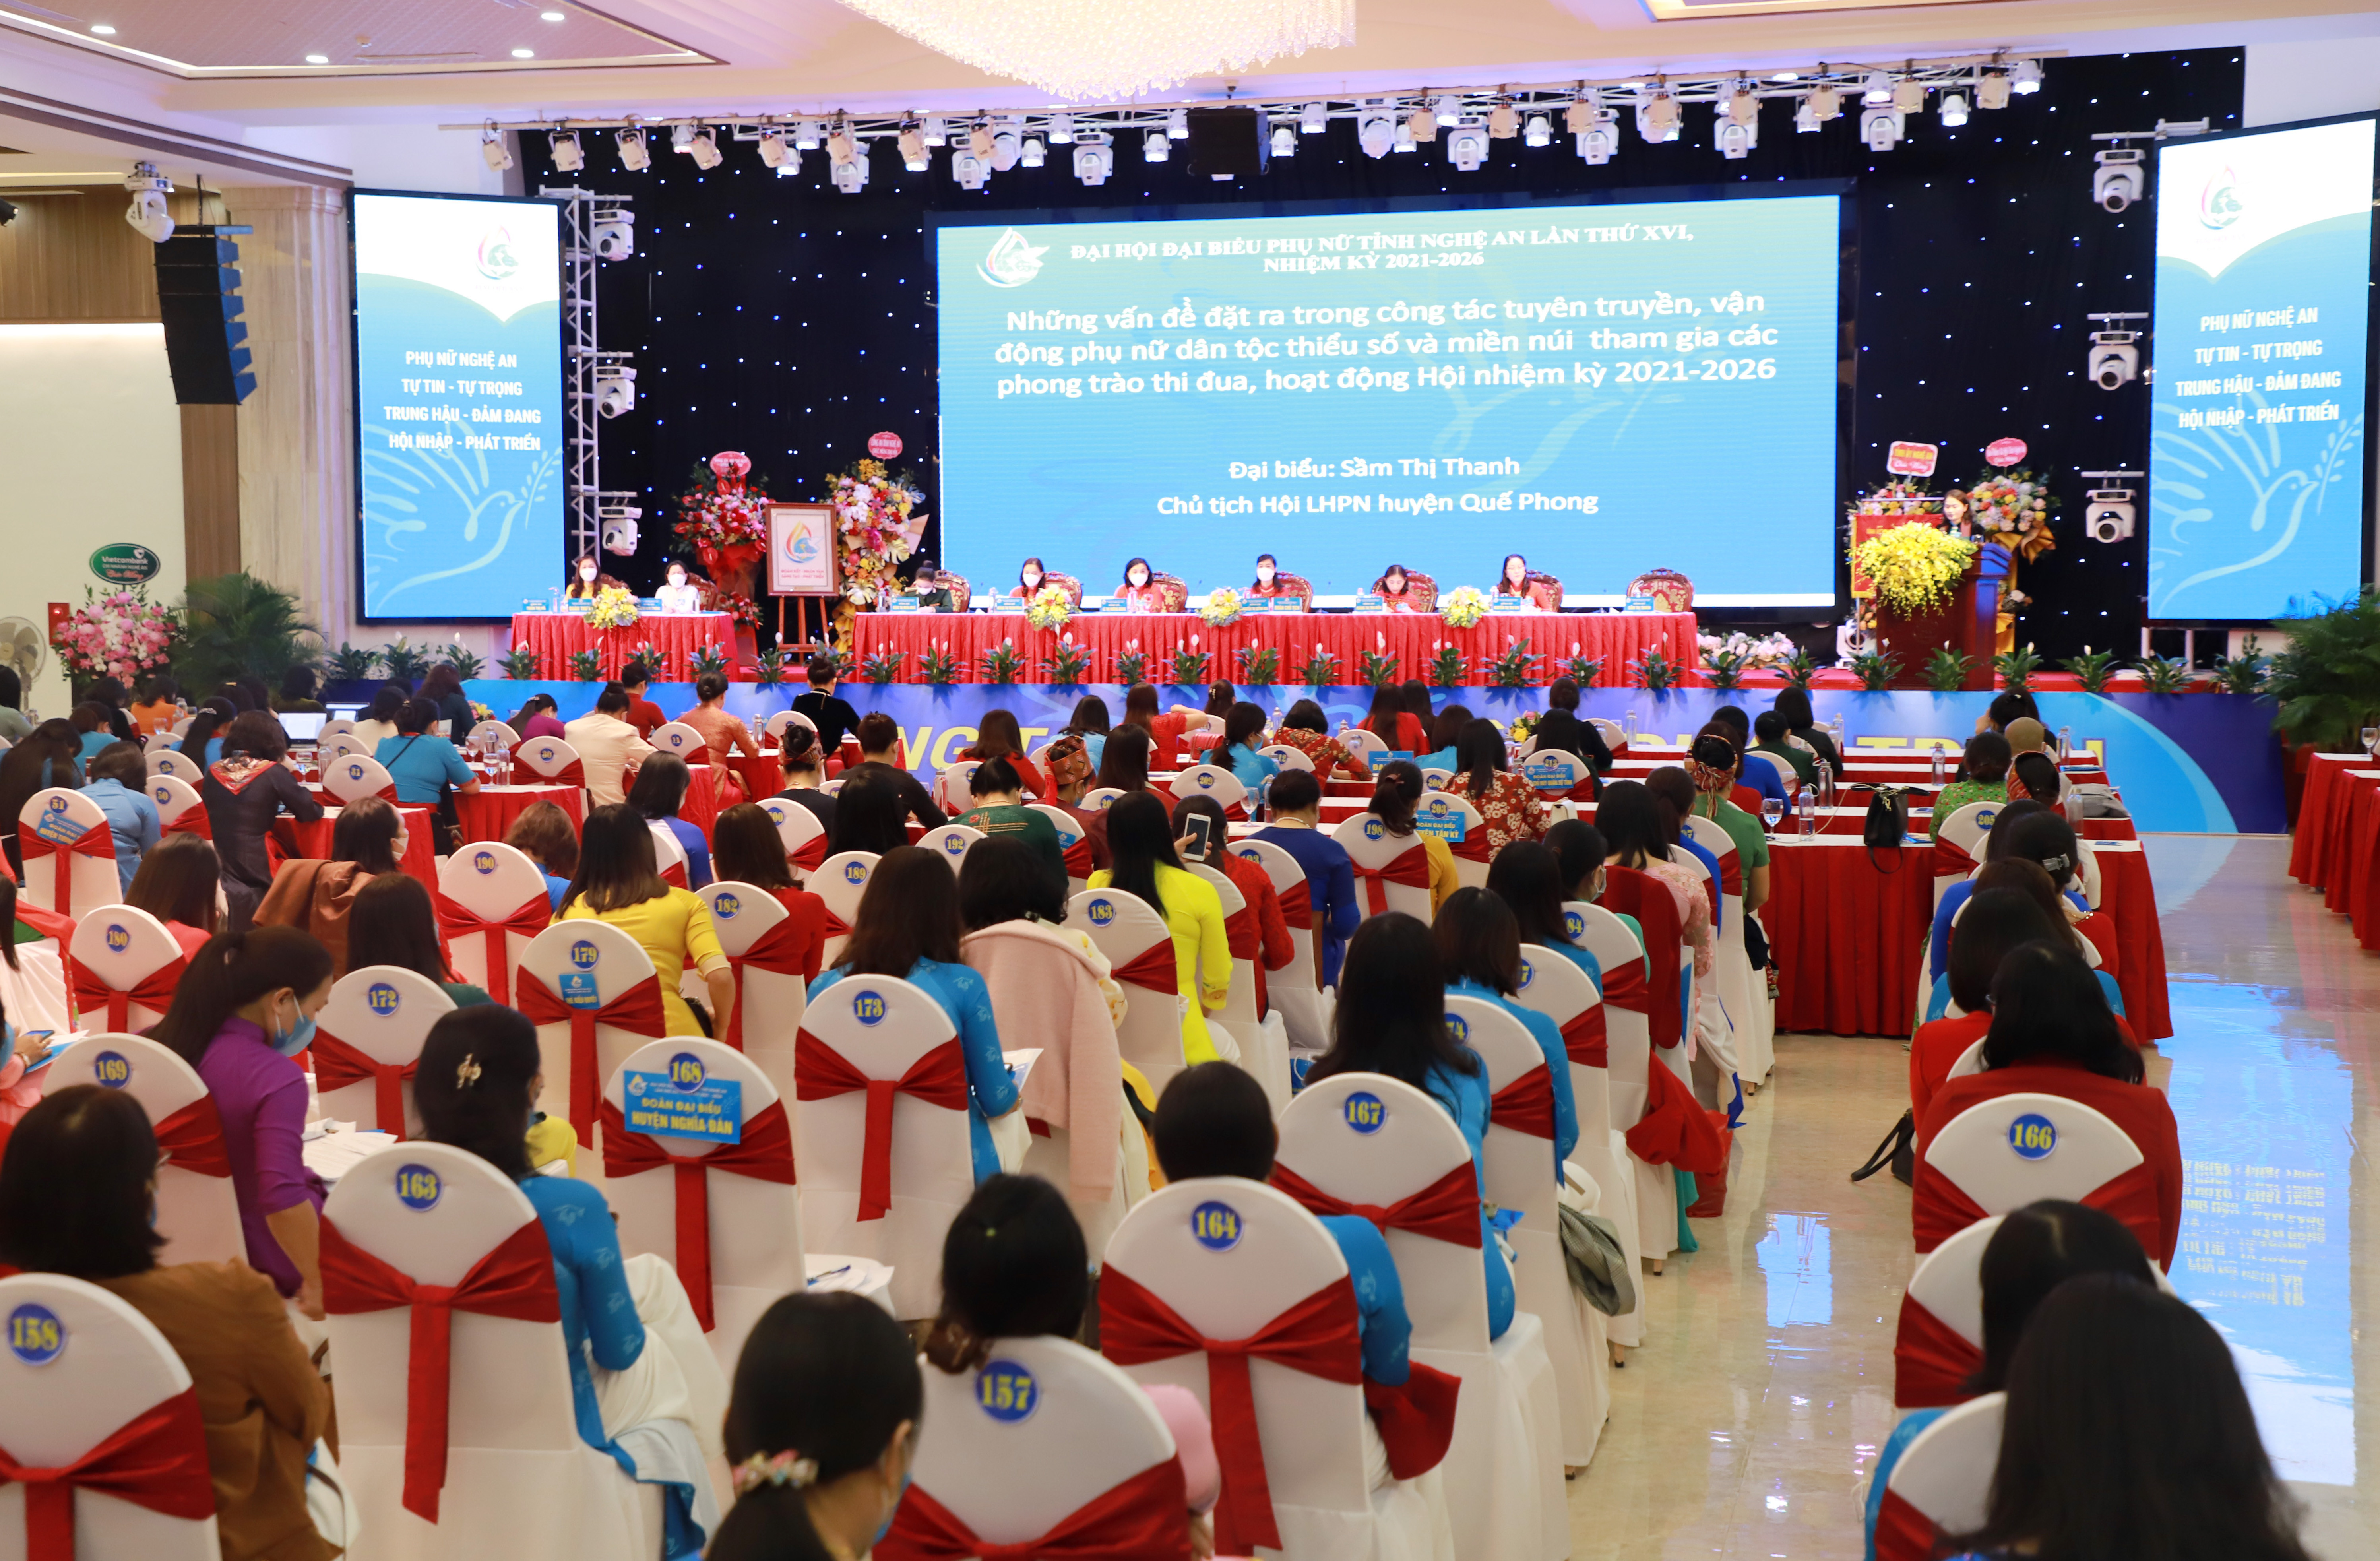 Toàn cảnh Đại hội đại biểu Phụ nữ tỉnh Nghệ An lần thứ XVI, nhiệm kỳ 2021-2026, phiên làm việc vào chiều 19/11. Ảnh: Thành Duy